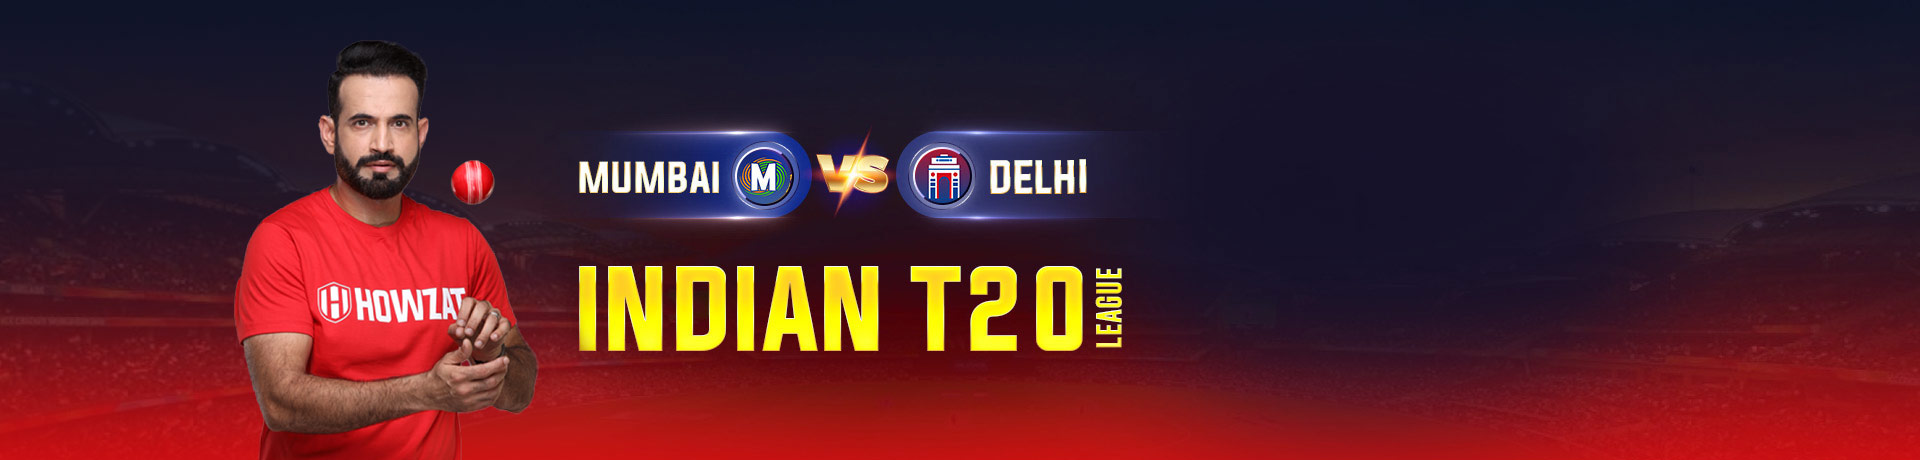 Mumbai vs Delhi Indian T20 League